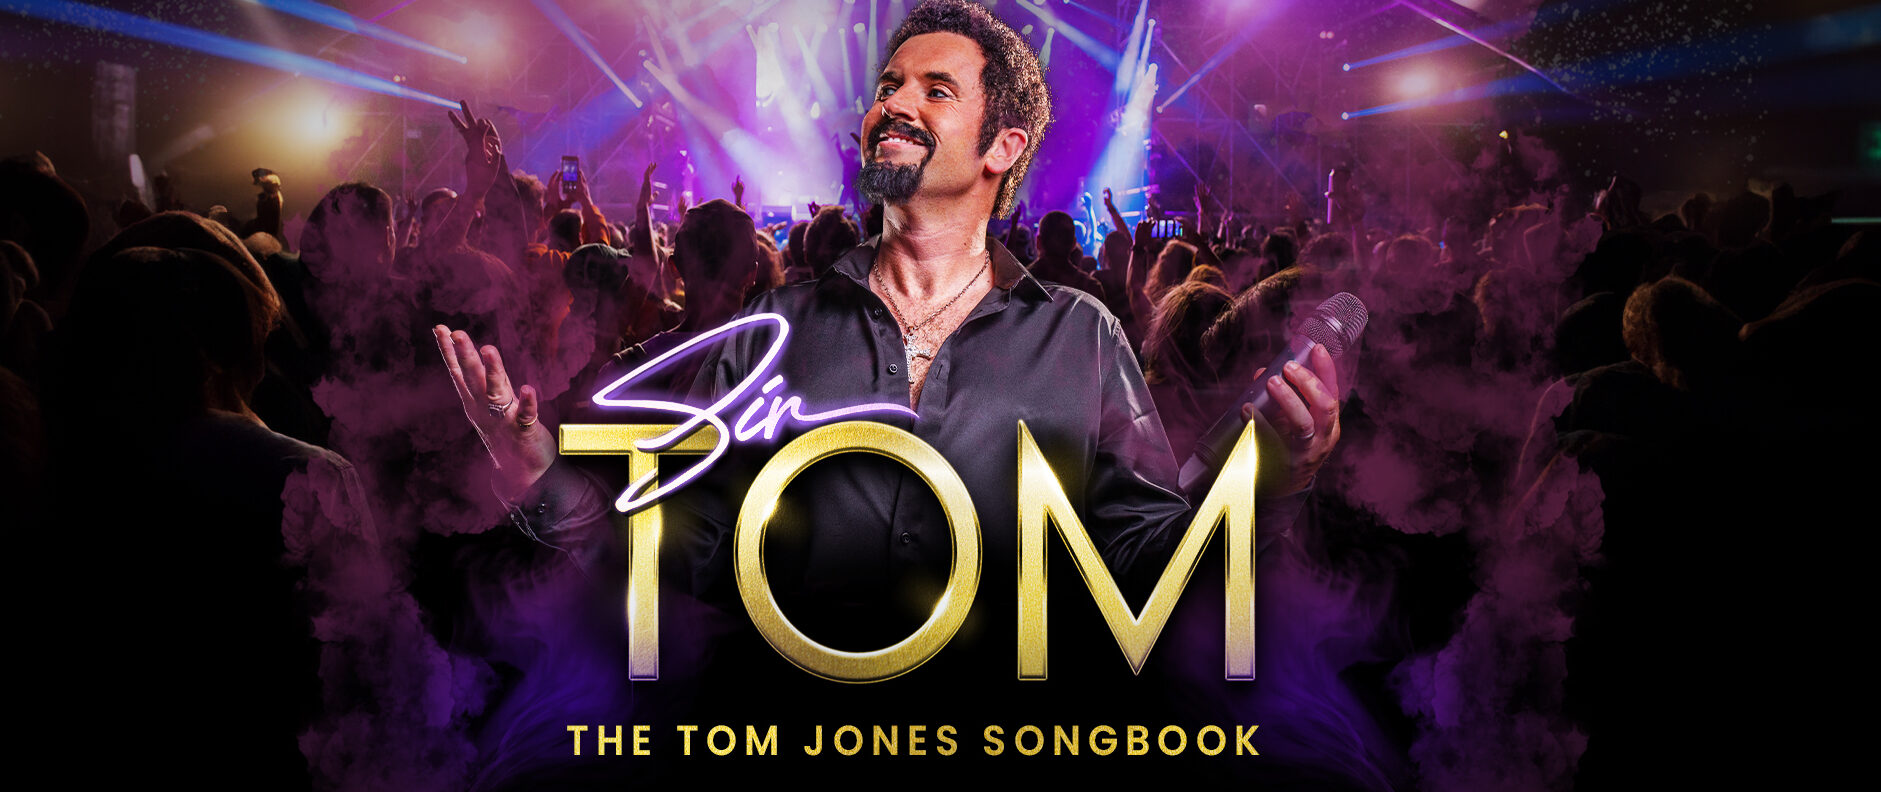 Sir Tom: The Tom Jones Songbook